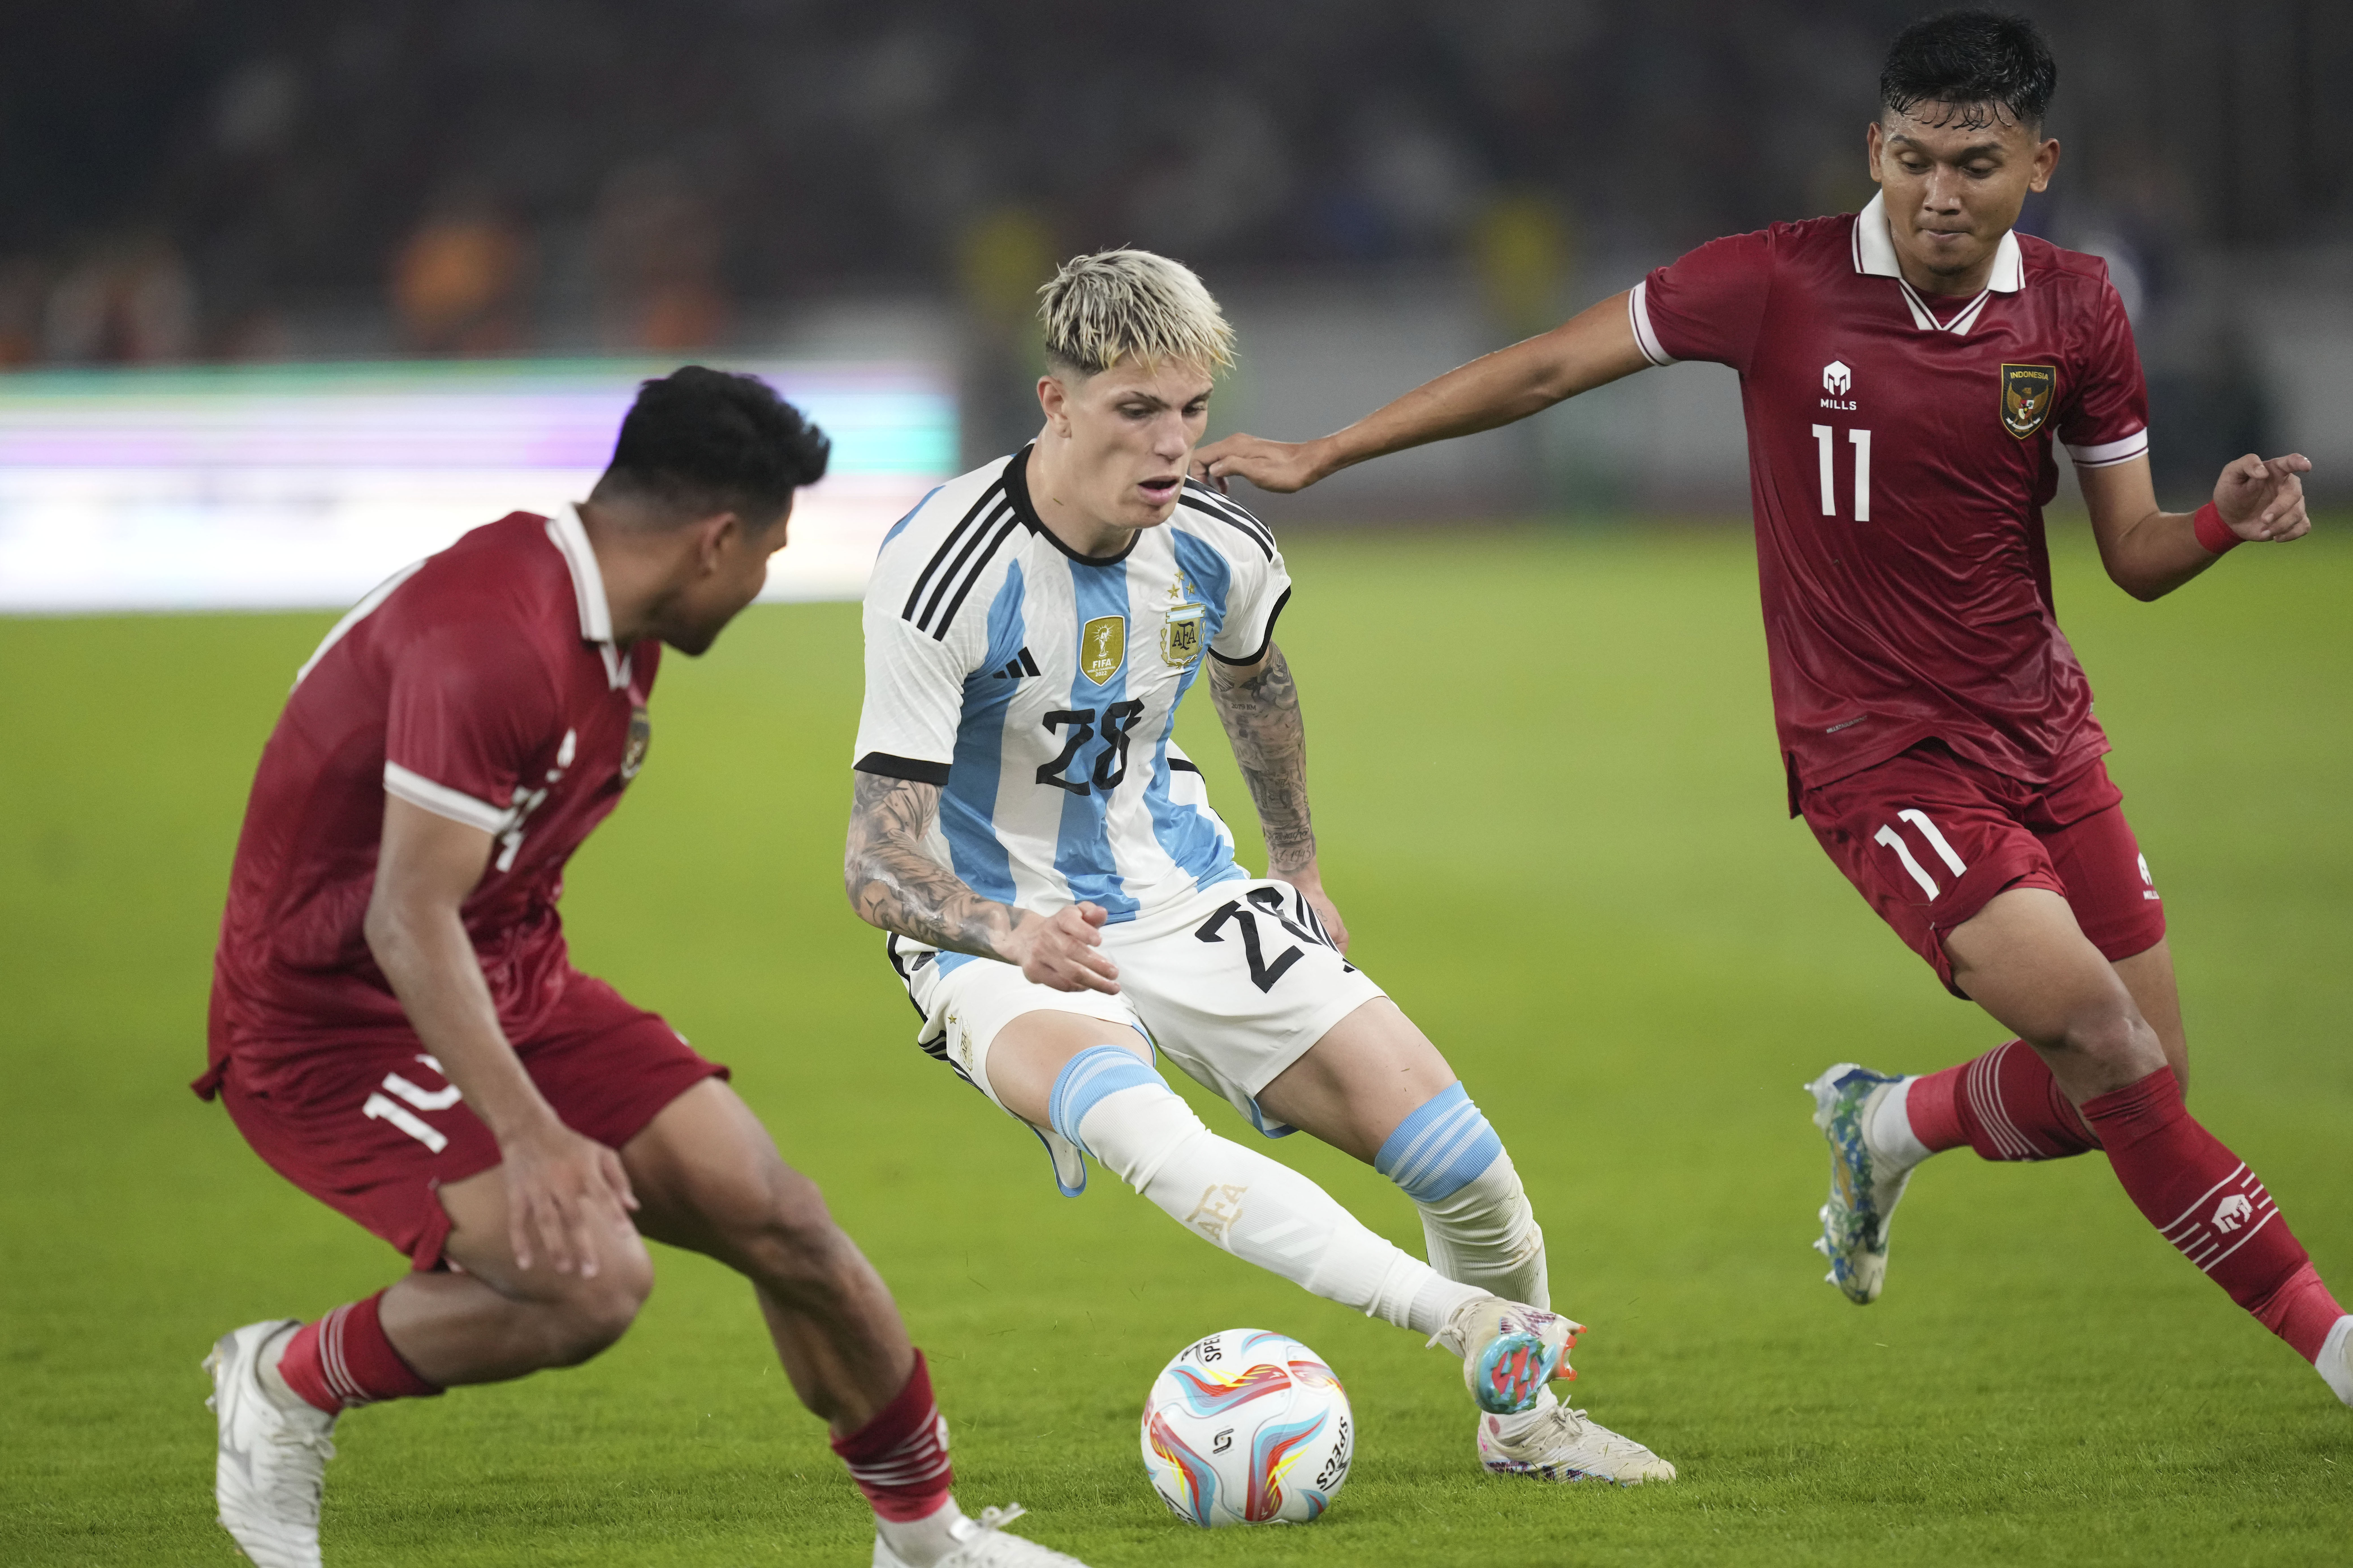 Cómo será la gira de la Copa del Mundo antes de Qatar y cuándo visitará  Argentina - TyC Sports